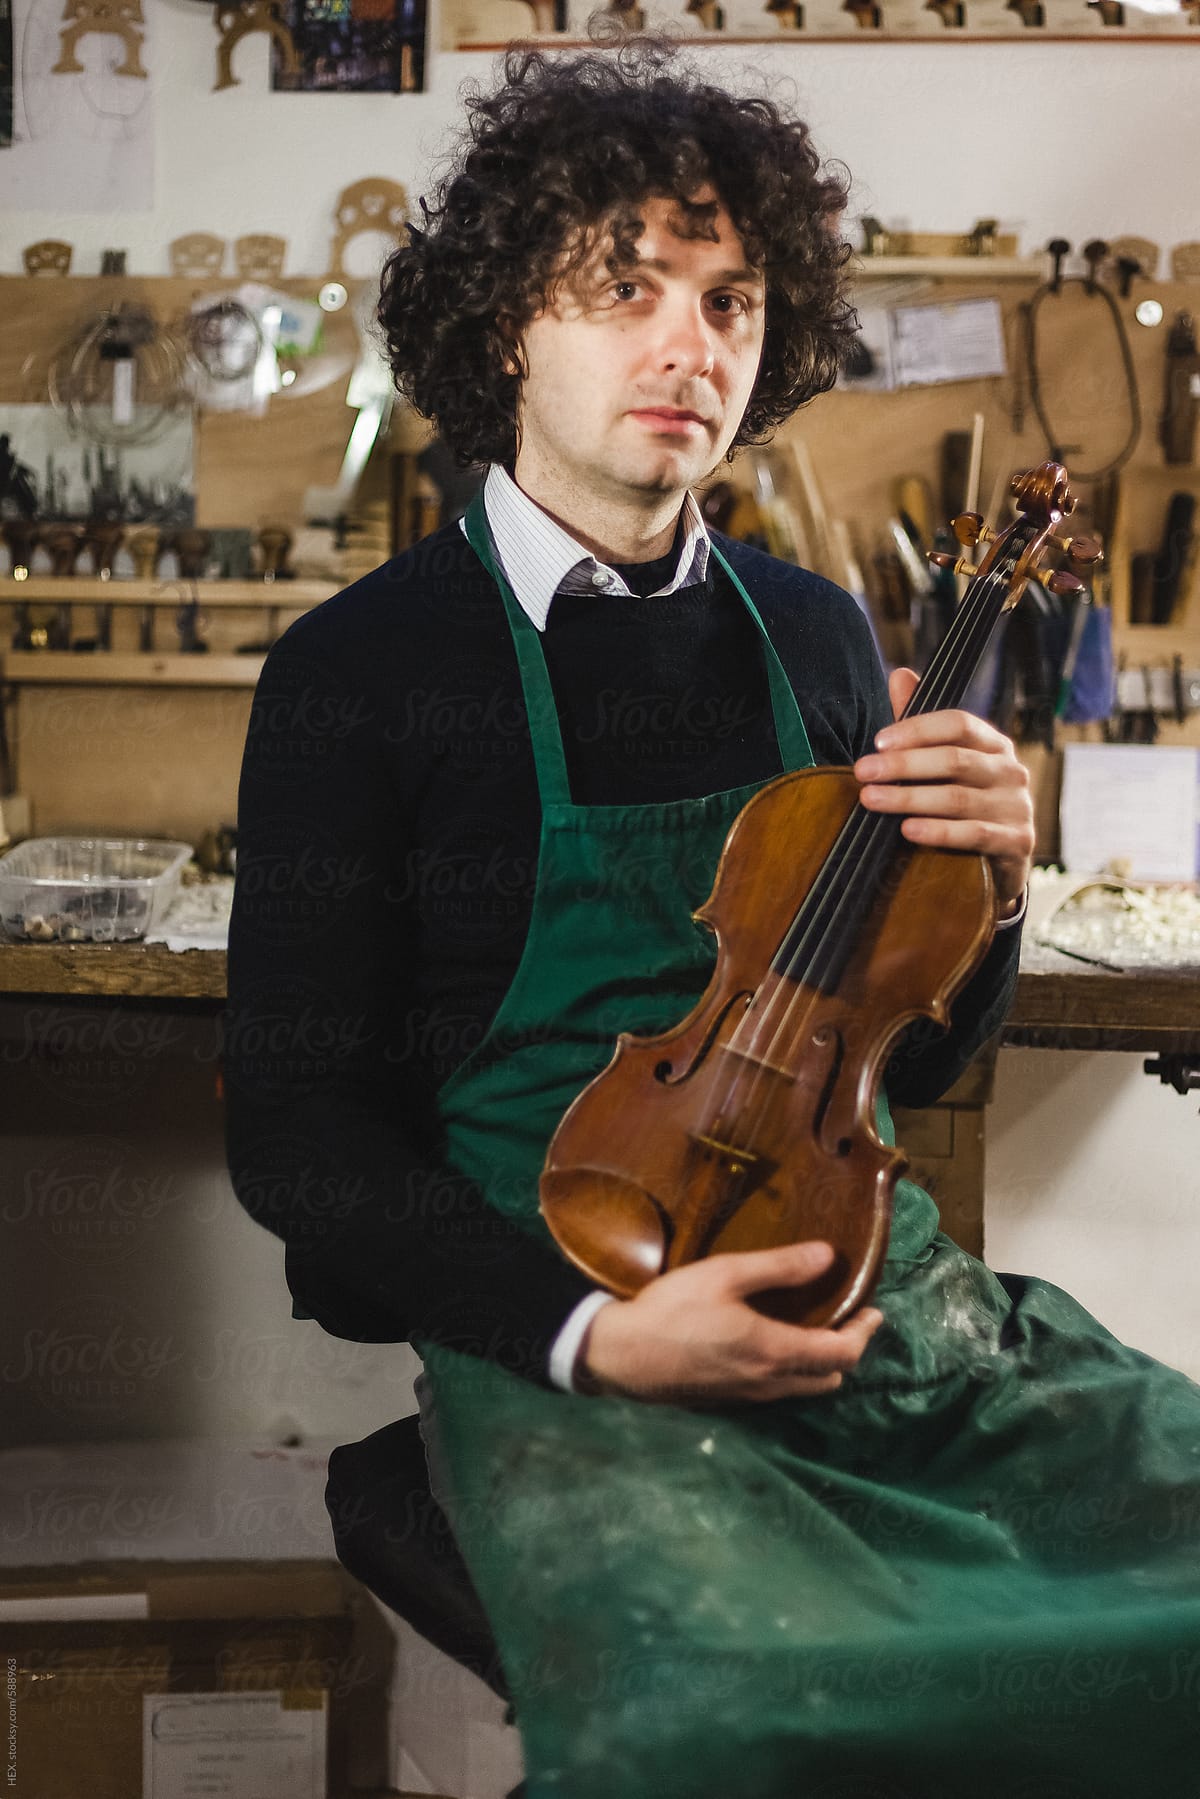 A Violin maker in his workshop.